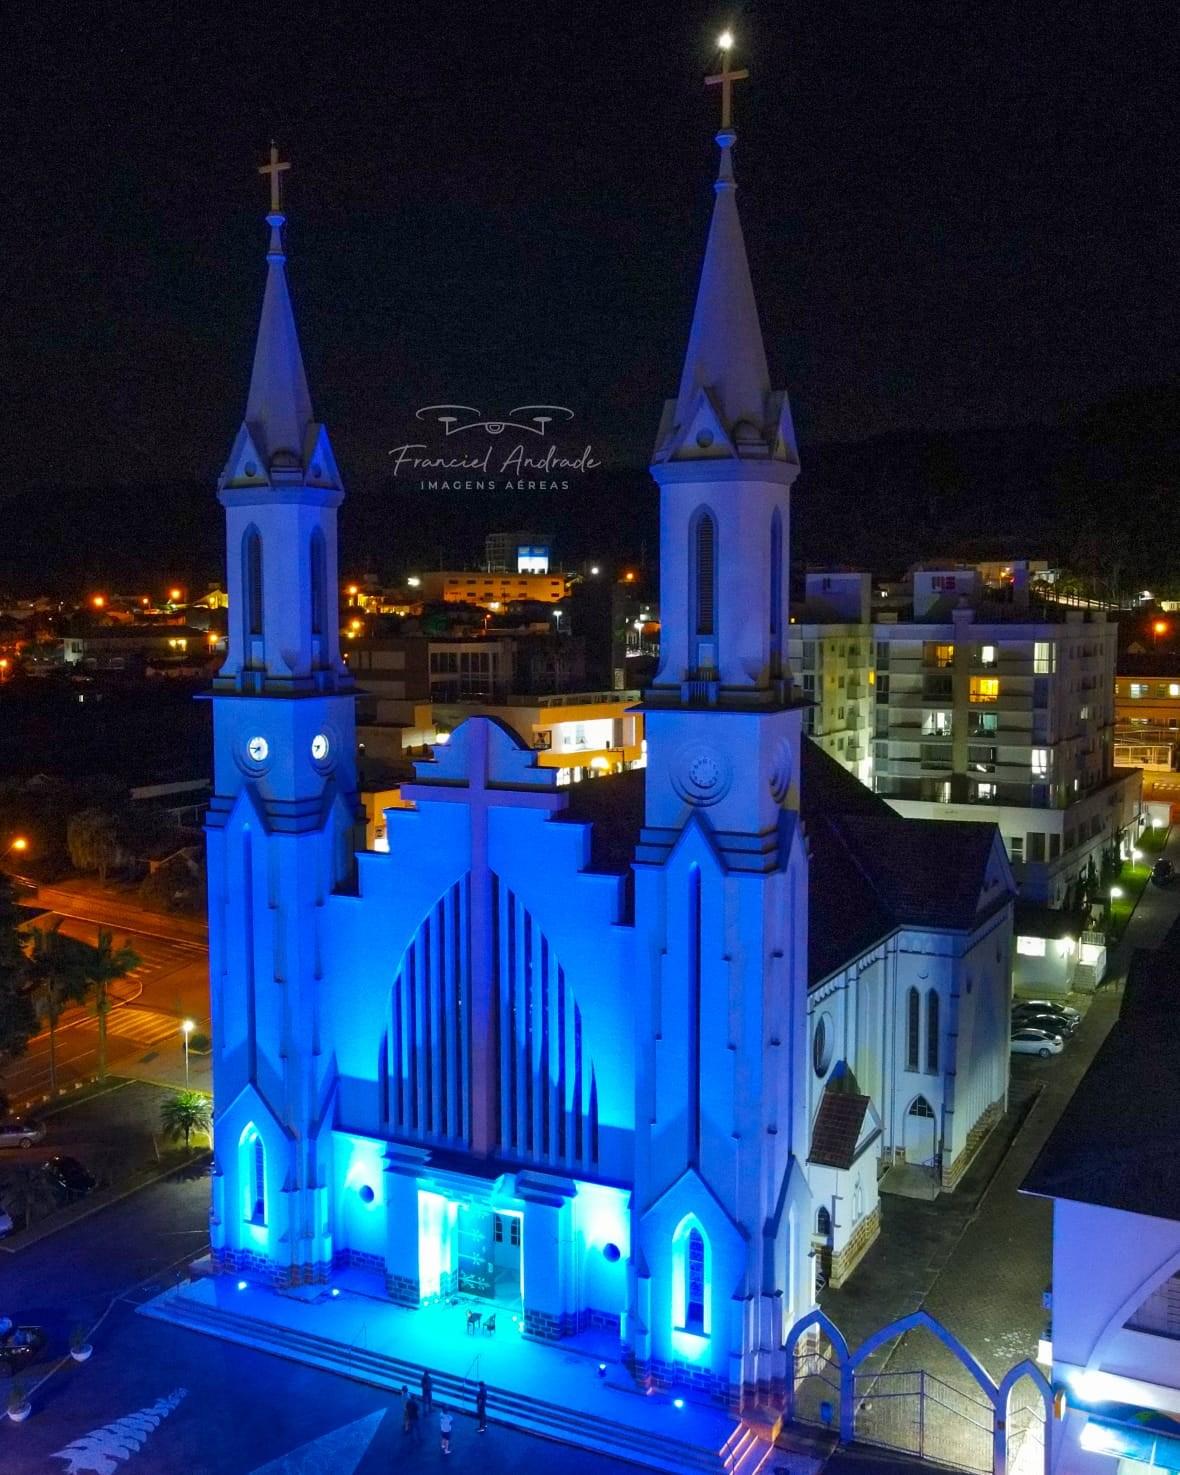 Nova iluminação da Igreja Matriz  de Ituporanga vai ser inaugurada neste sábado (13)